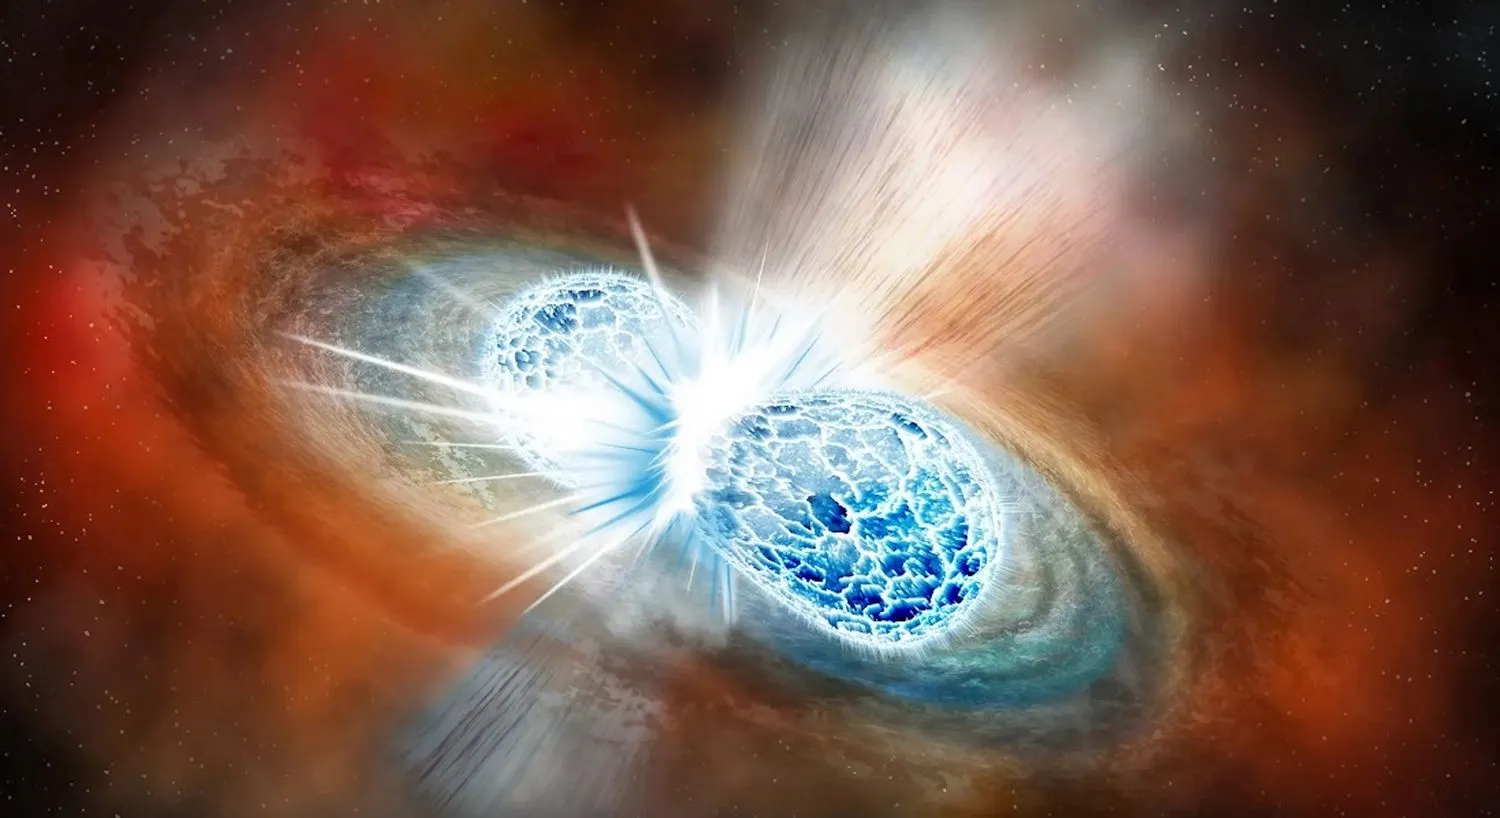 Eine Illustration von zwei eisblauen Kugeln, die zusammenstoßen, umgeben von warmem rötlichen Staub und Gas.